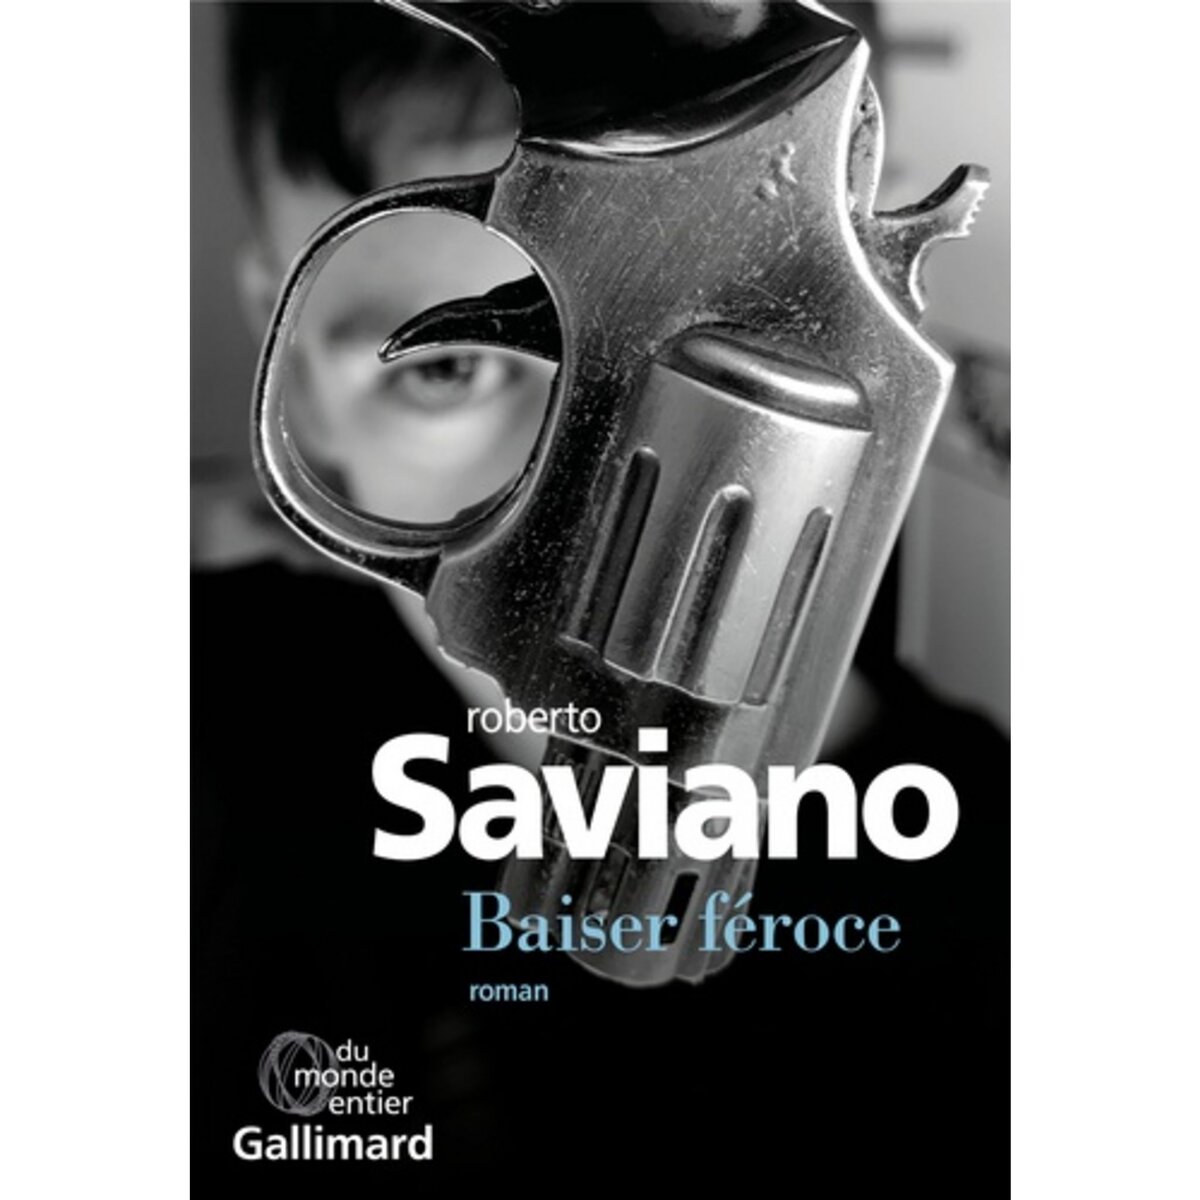  BAISER FEROCE, Saviano Roberto